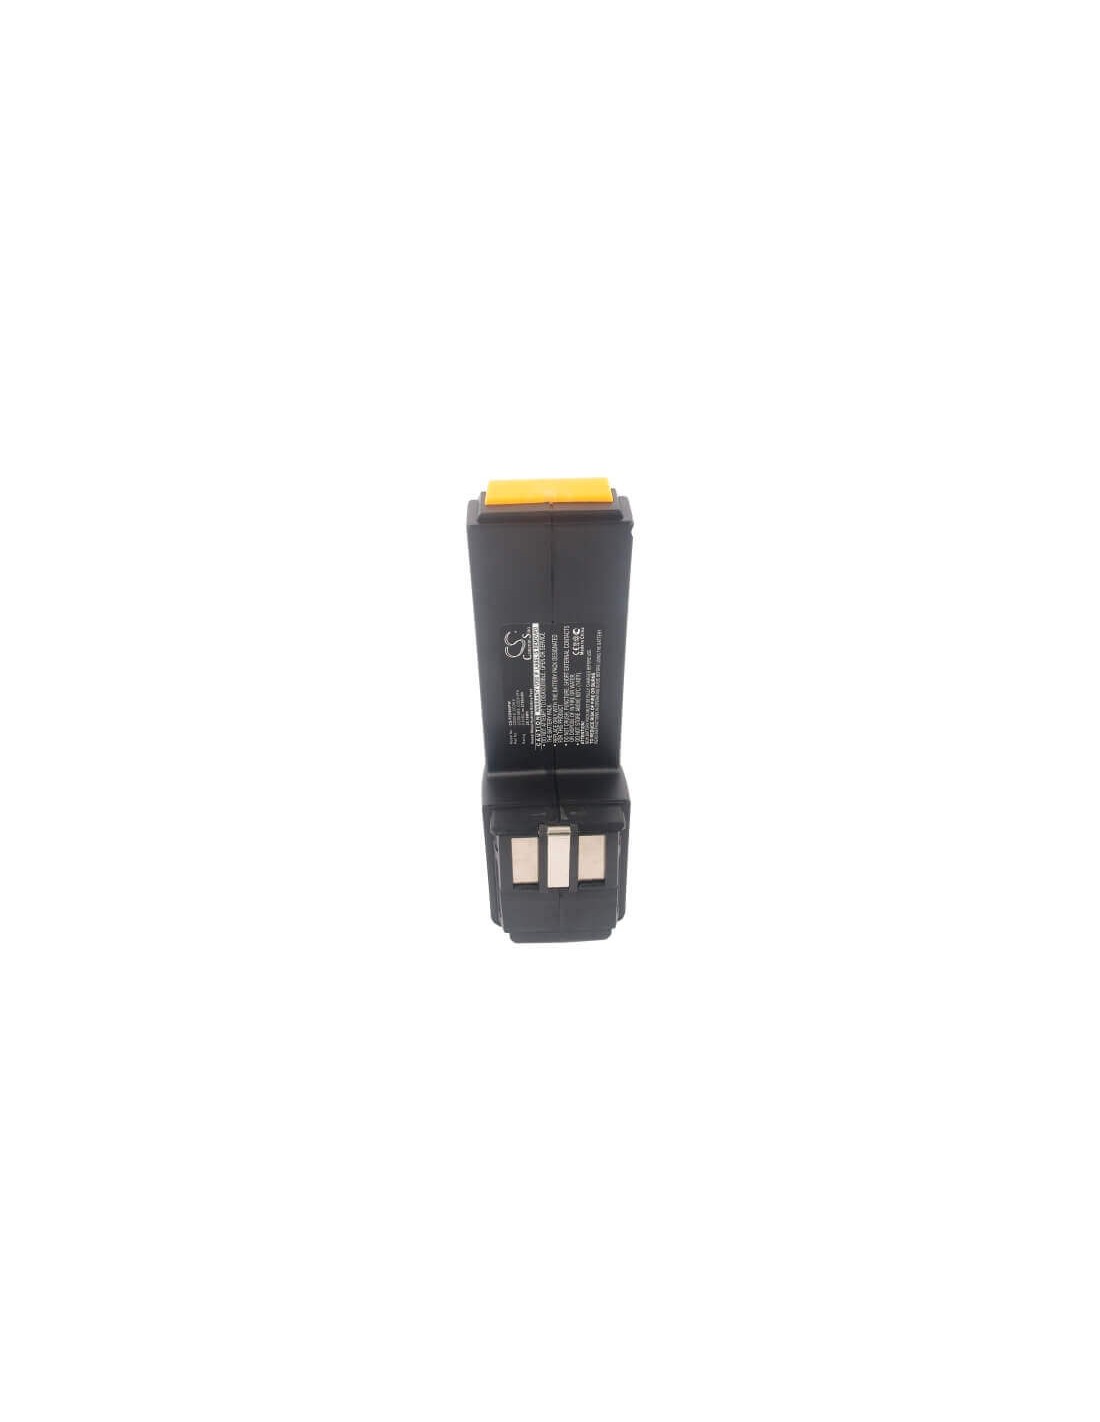 Battery for Festool Bph9.6c, Fsp-486828, Fsp-487512 9.6V, 2100mAh - 20.16Wh